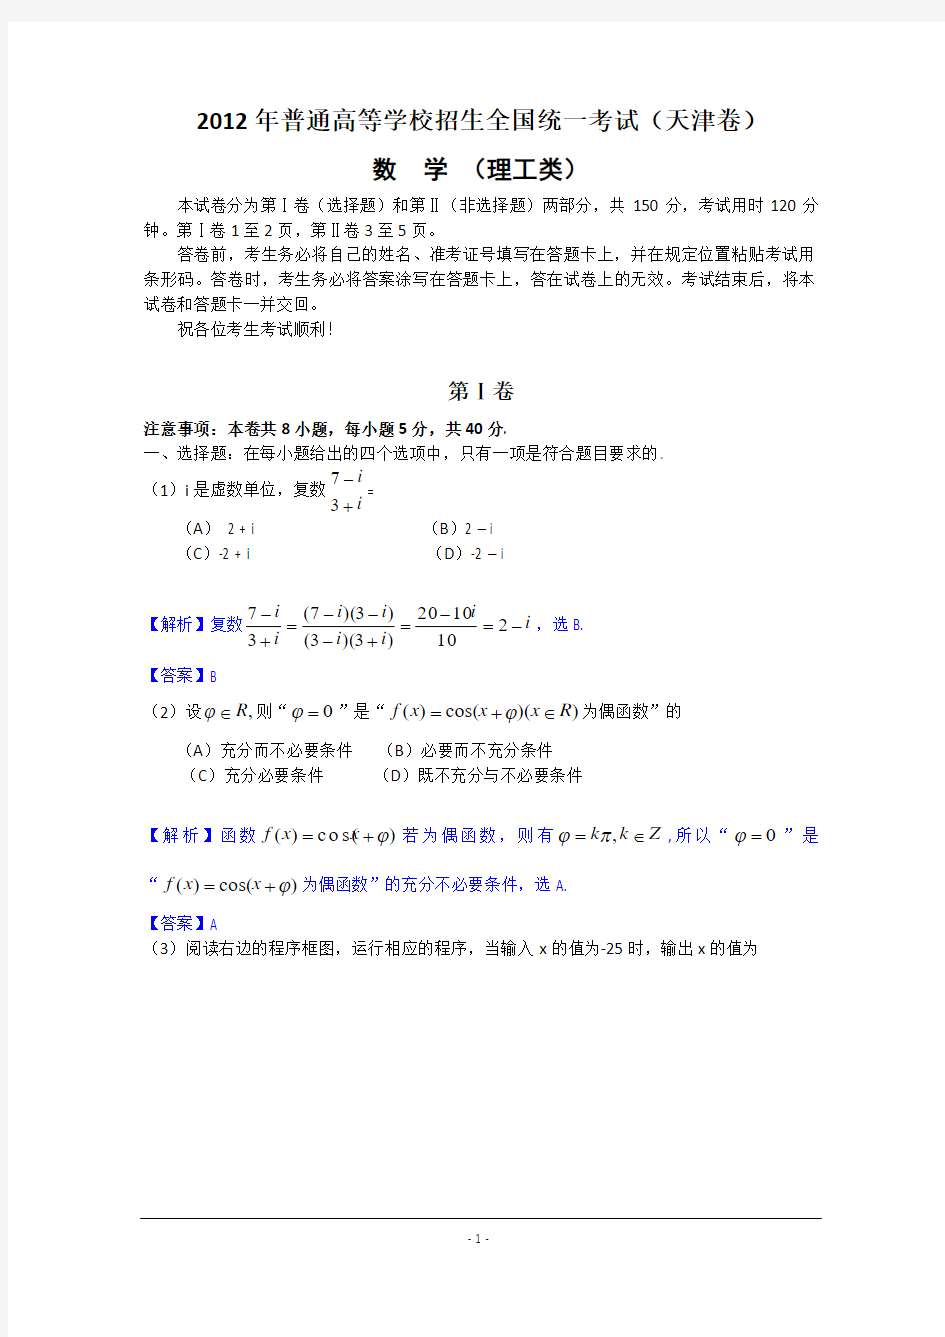 2012年高考真题——理科数学(天津卷)解析版(1)